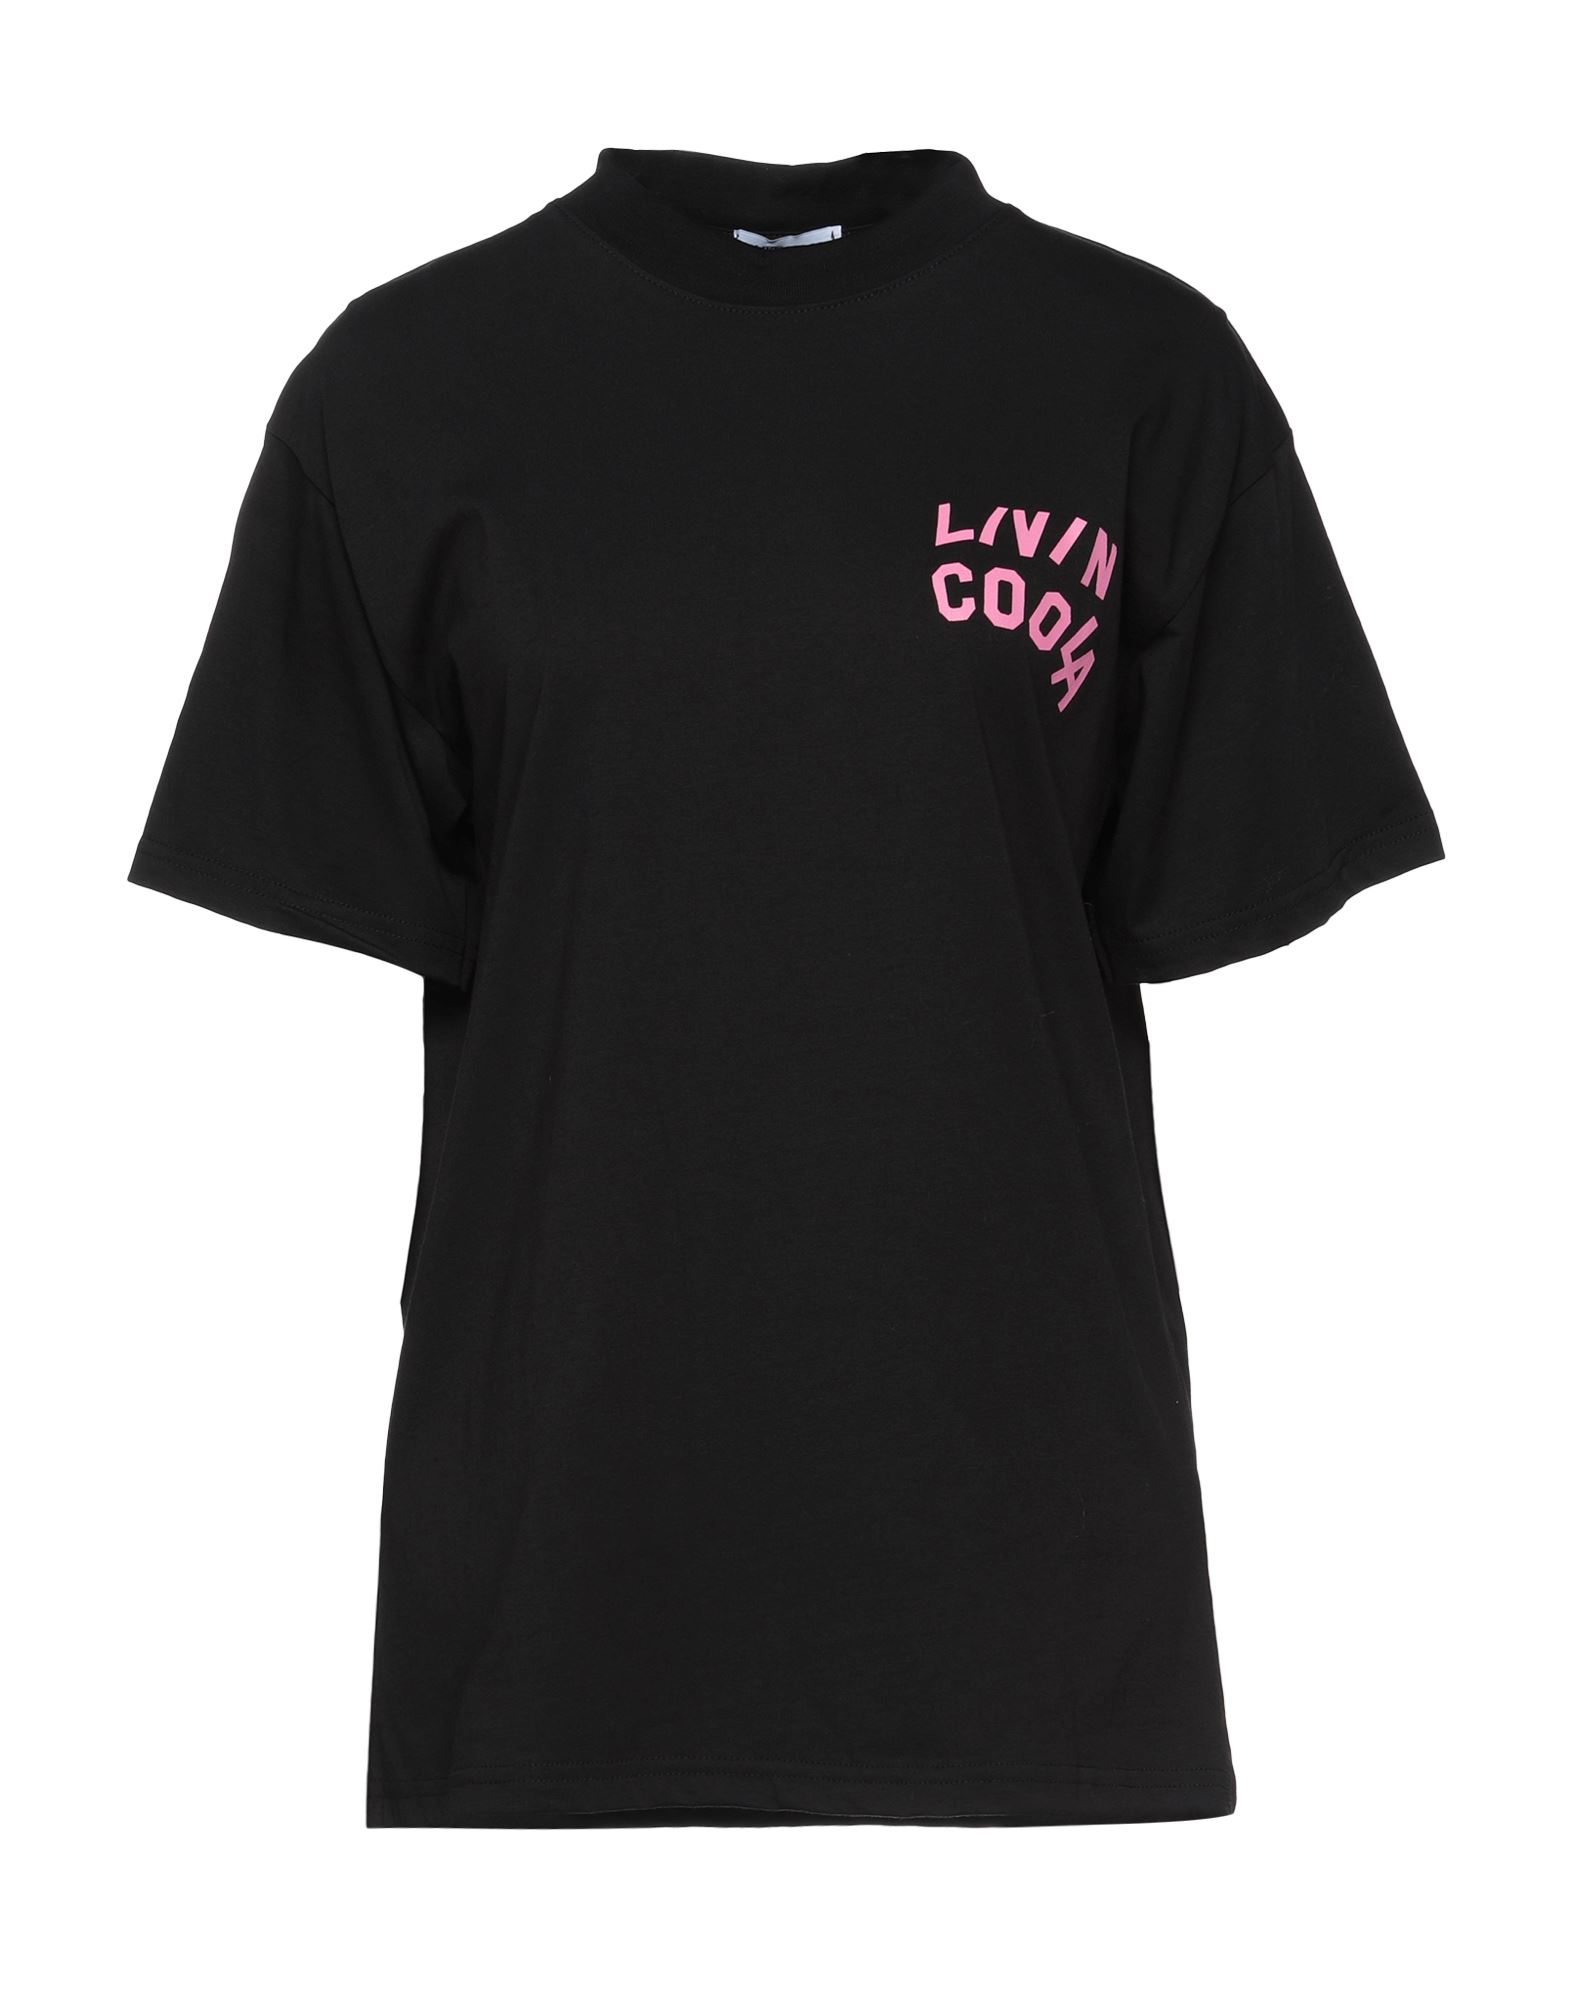 Shop Livincool Woman T-shirt Black Size S Cotton